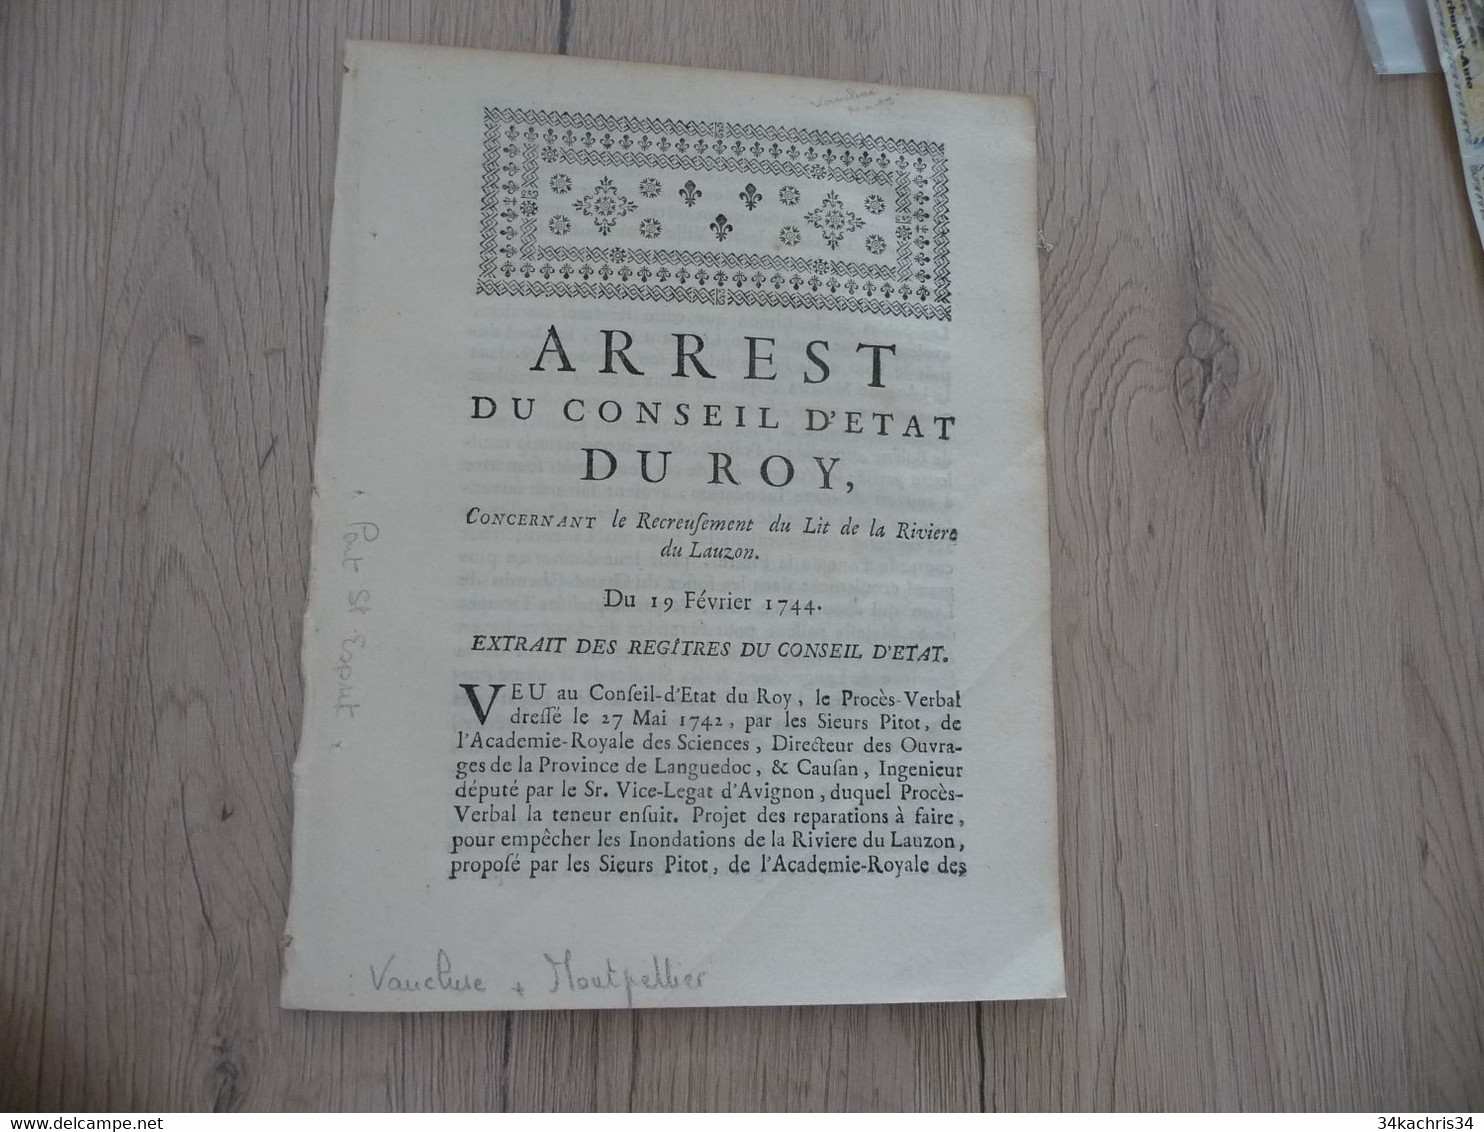 Arrest Conseil D'état Du Roi 19/02/1724 Recreusement Du Lit De La Rivière Du Lauzon - Decrees & Laws